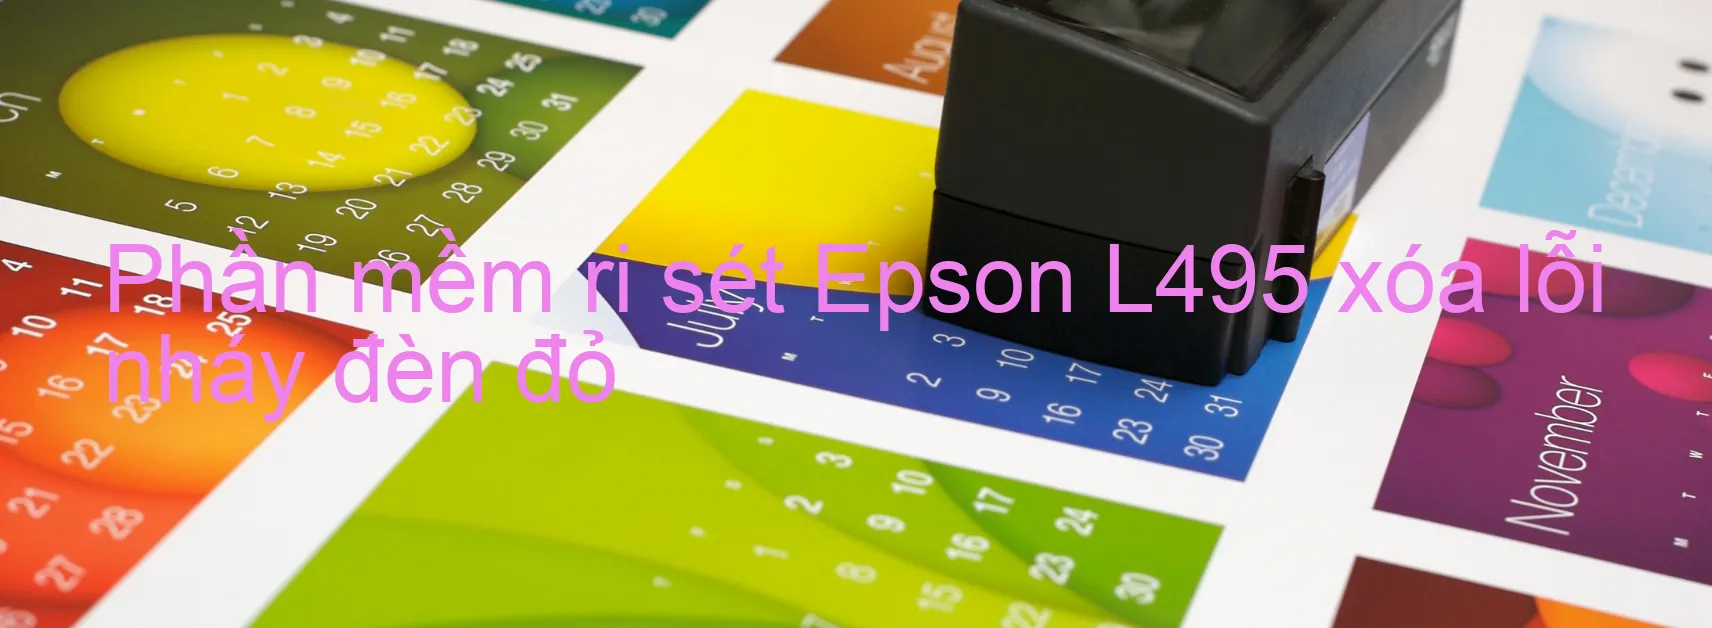 Phần mềm reset Epson L495 xóa lỗi nháy đèn đỏ